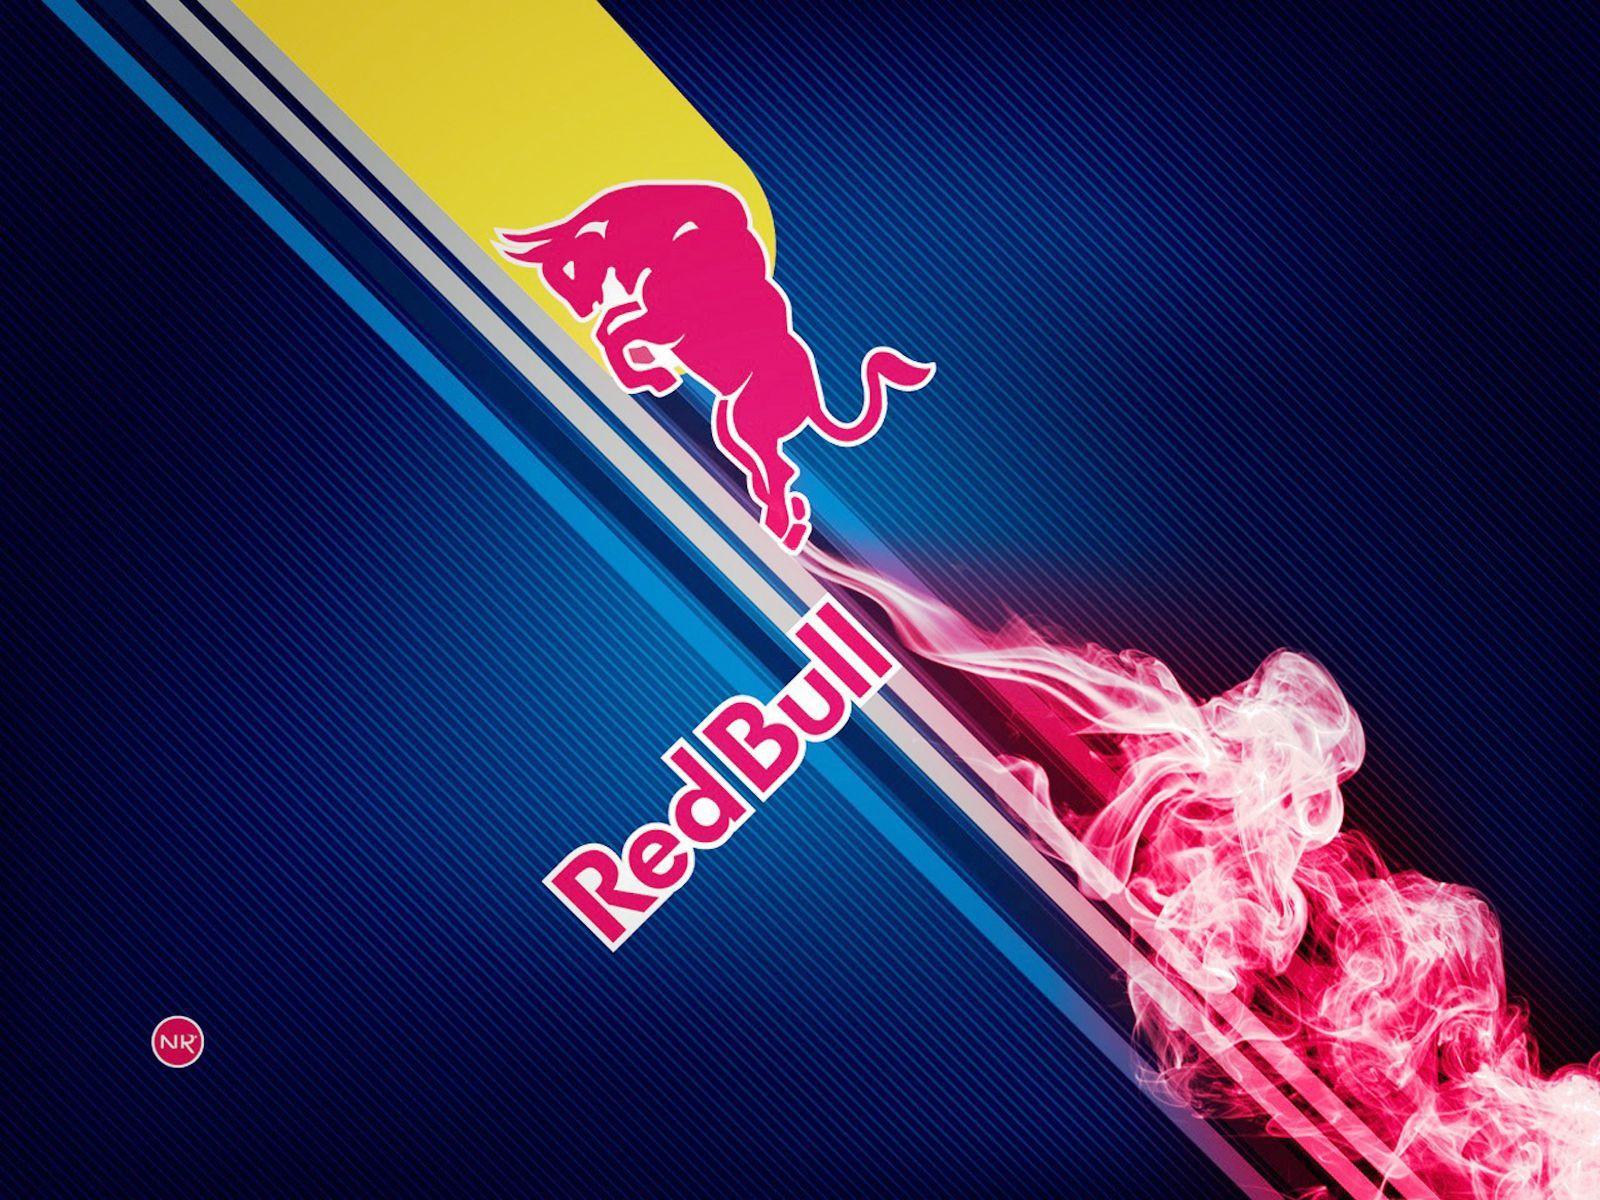 Cool Red Bull Logo - Red Bull Logo Wallpaper HD For Desktop Collection. Red Bull RTB